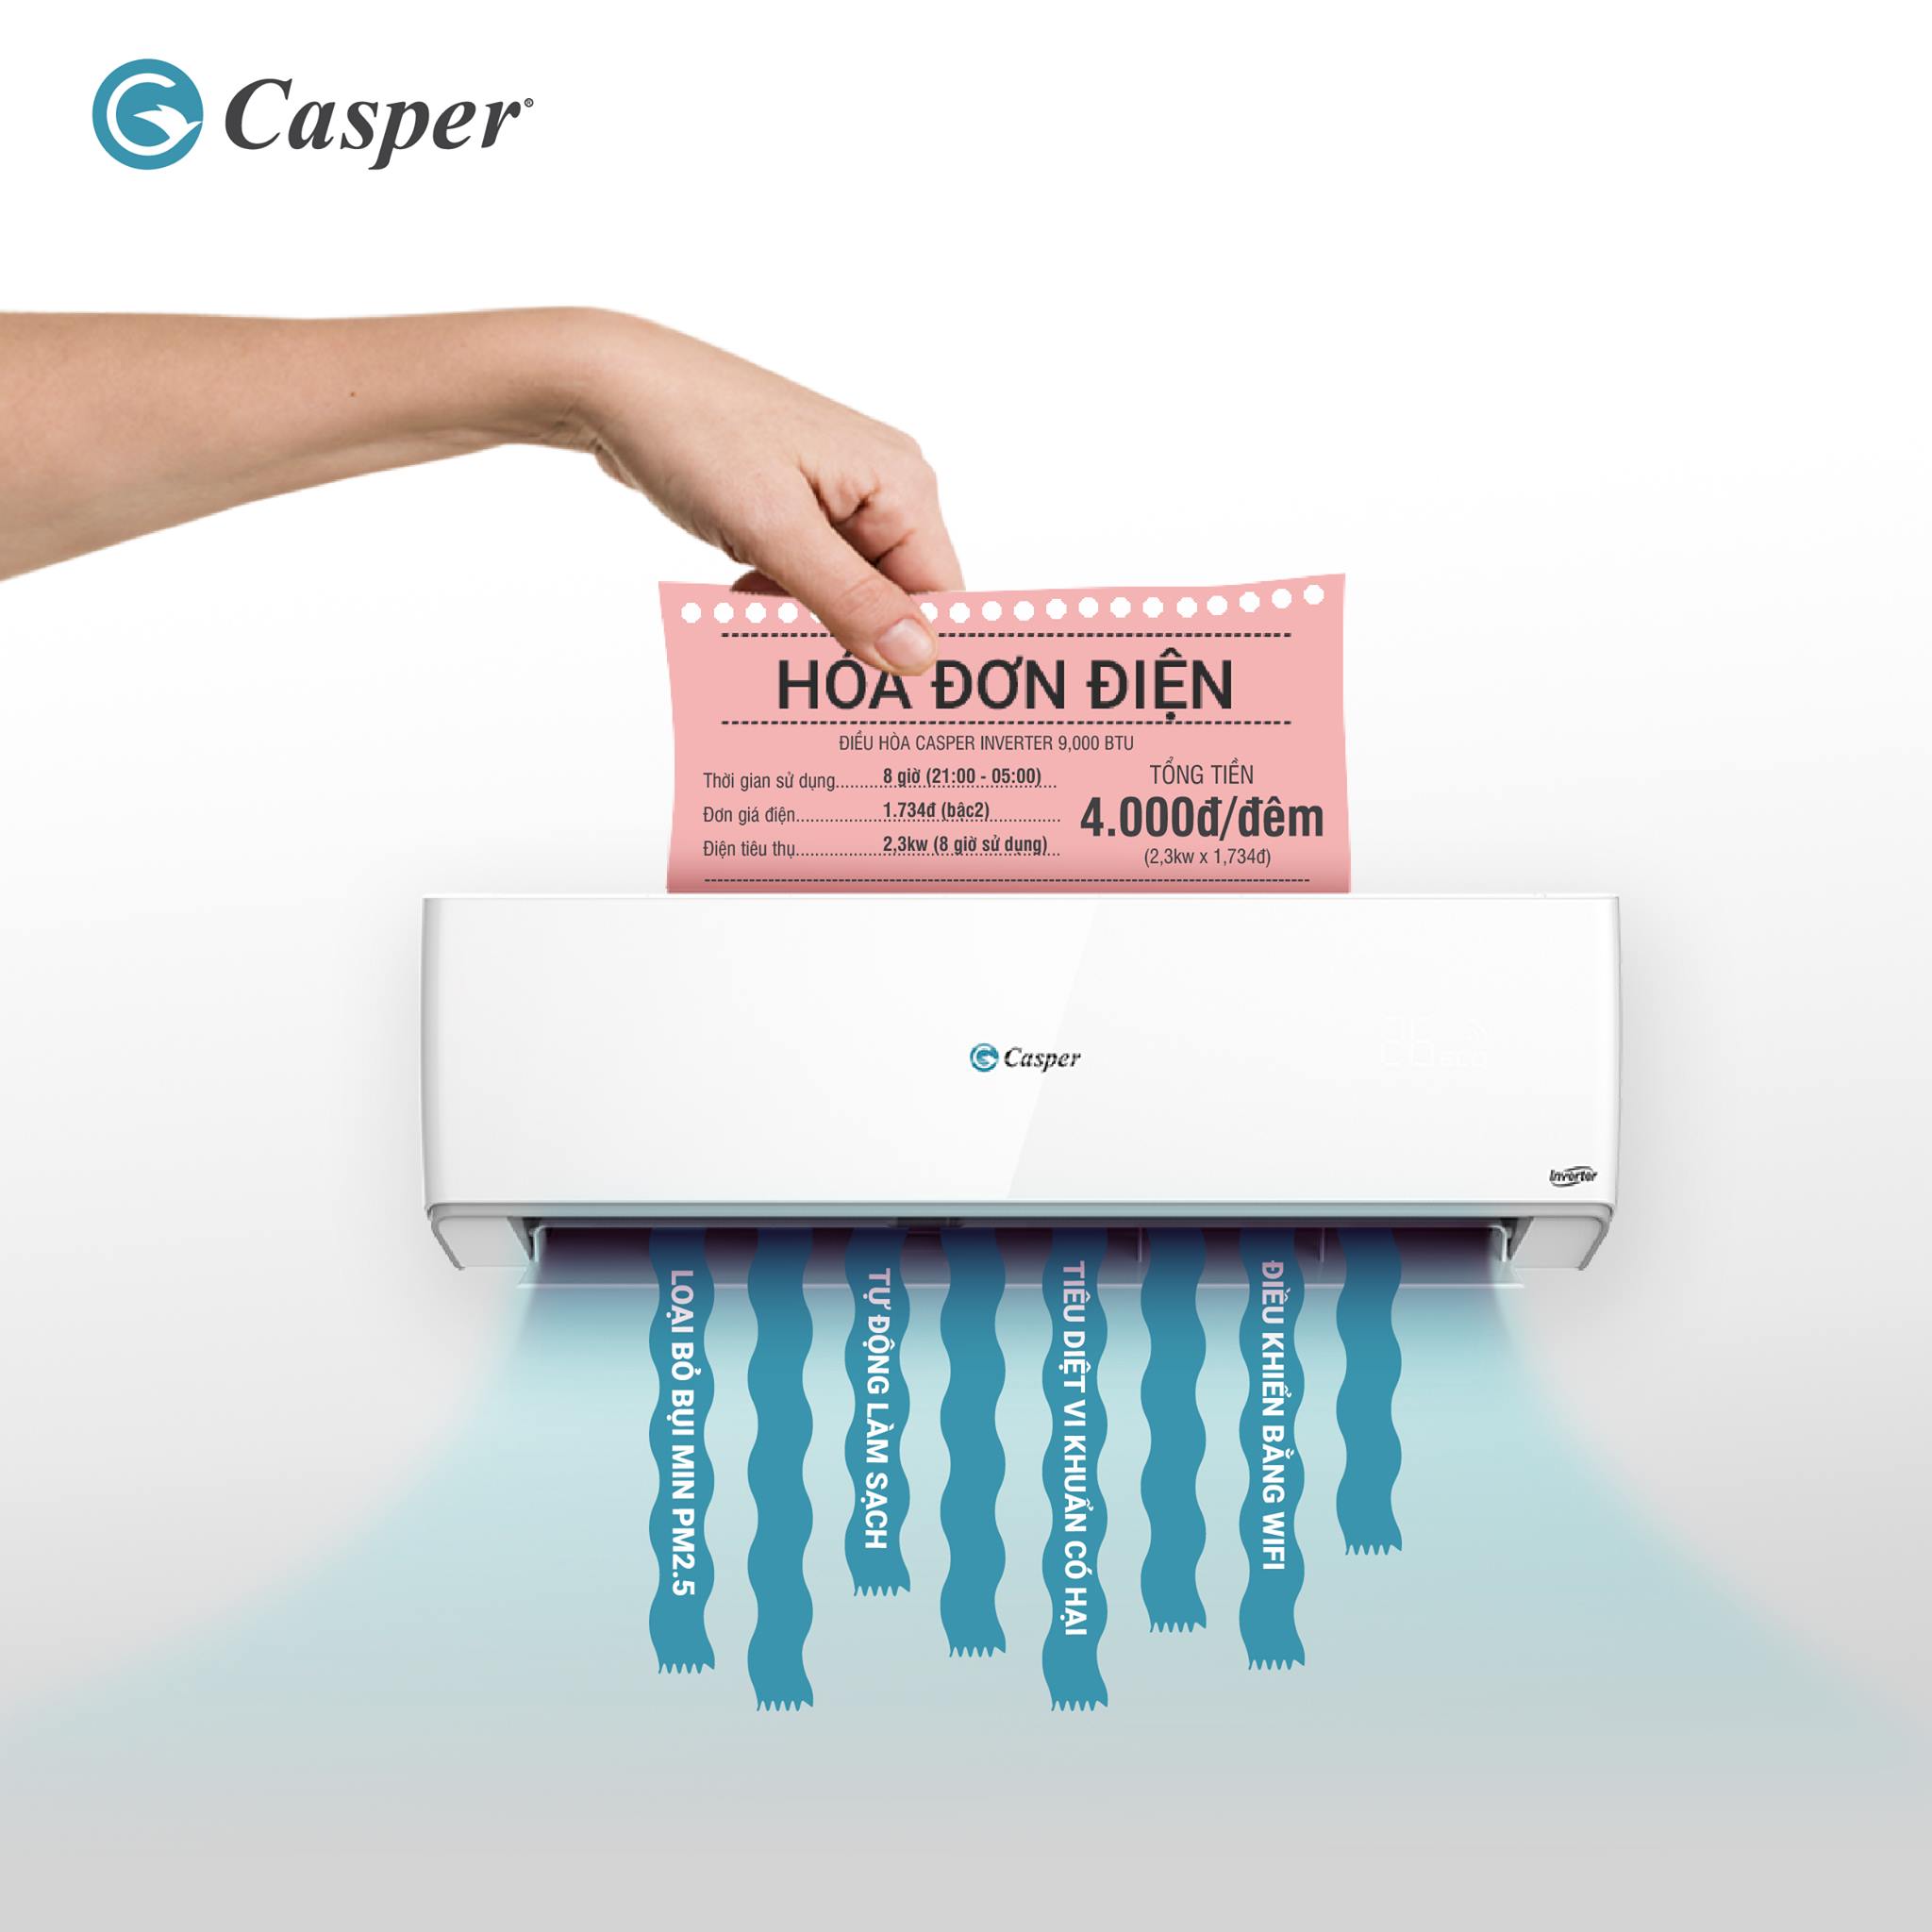 Máy lạnh Casper có tiết kiệm điện không?